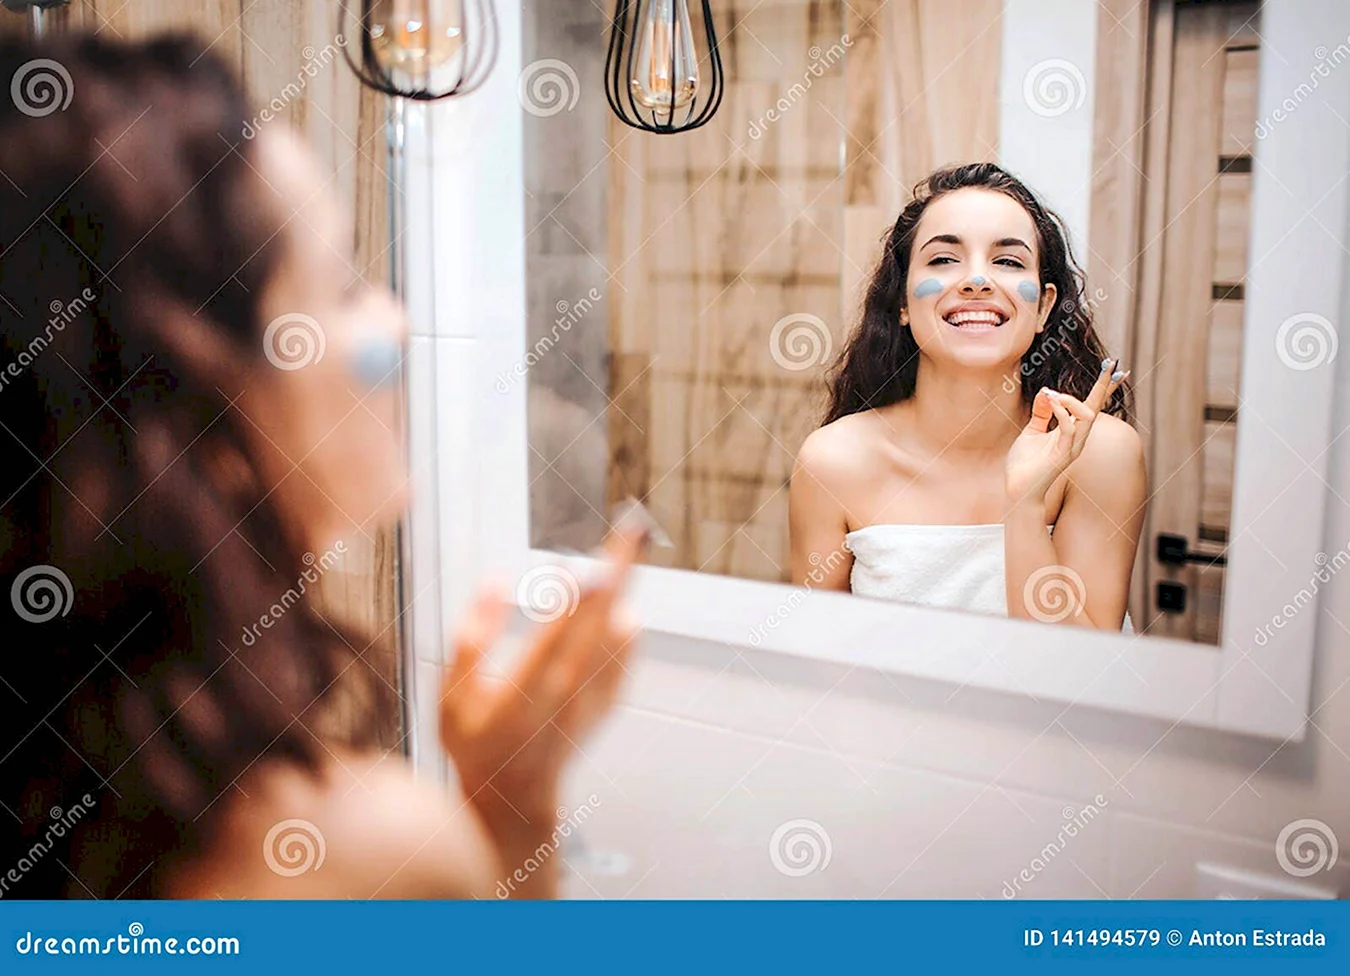 Девушка улыбается в зеркало